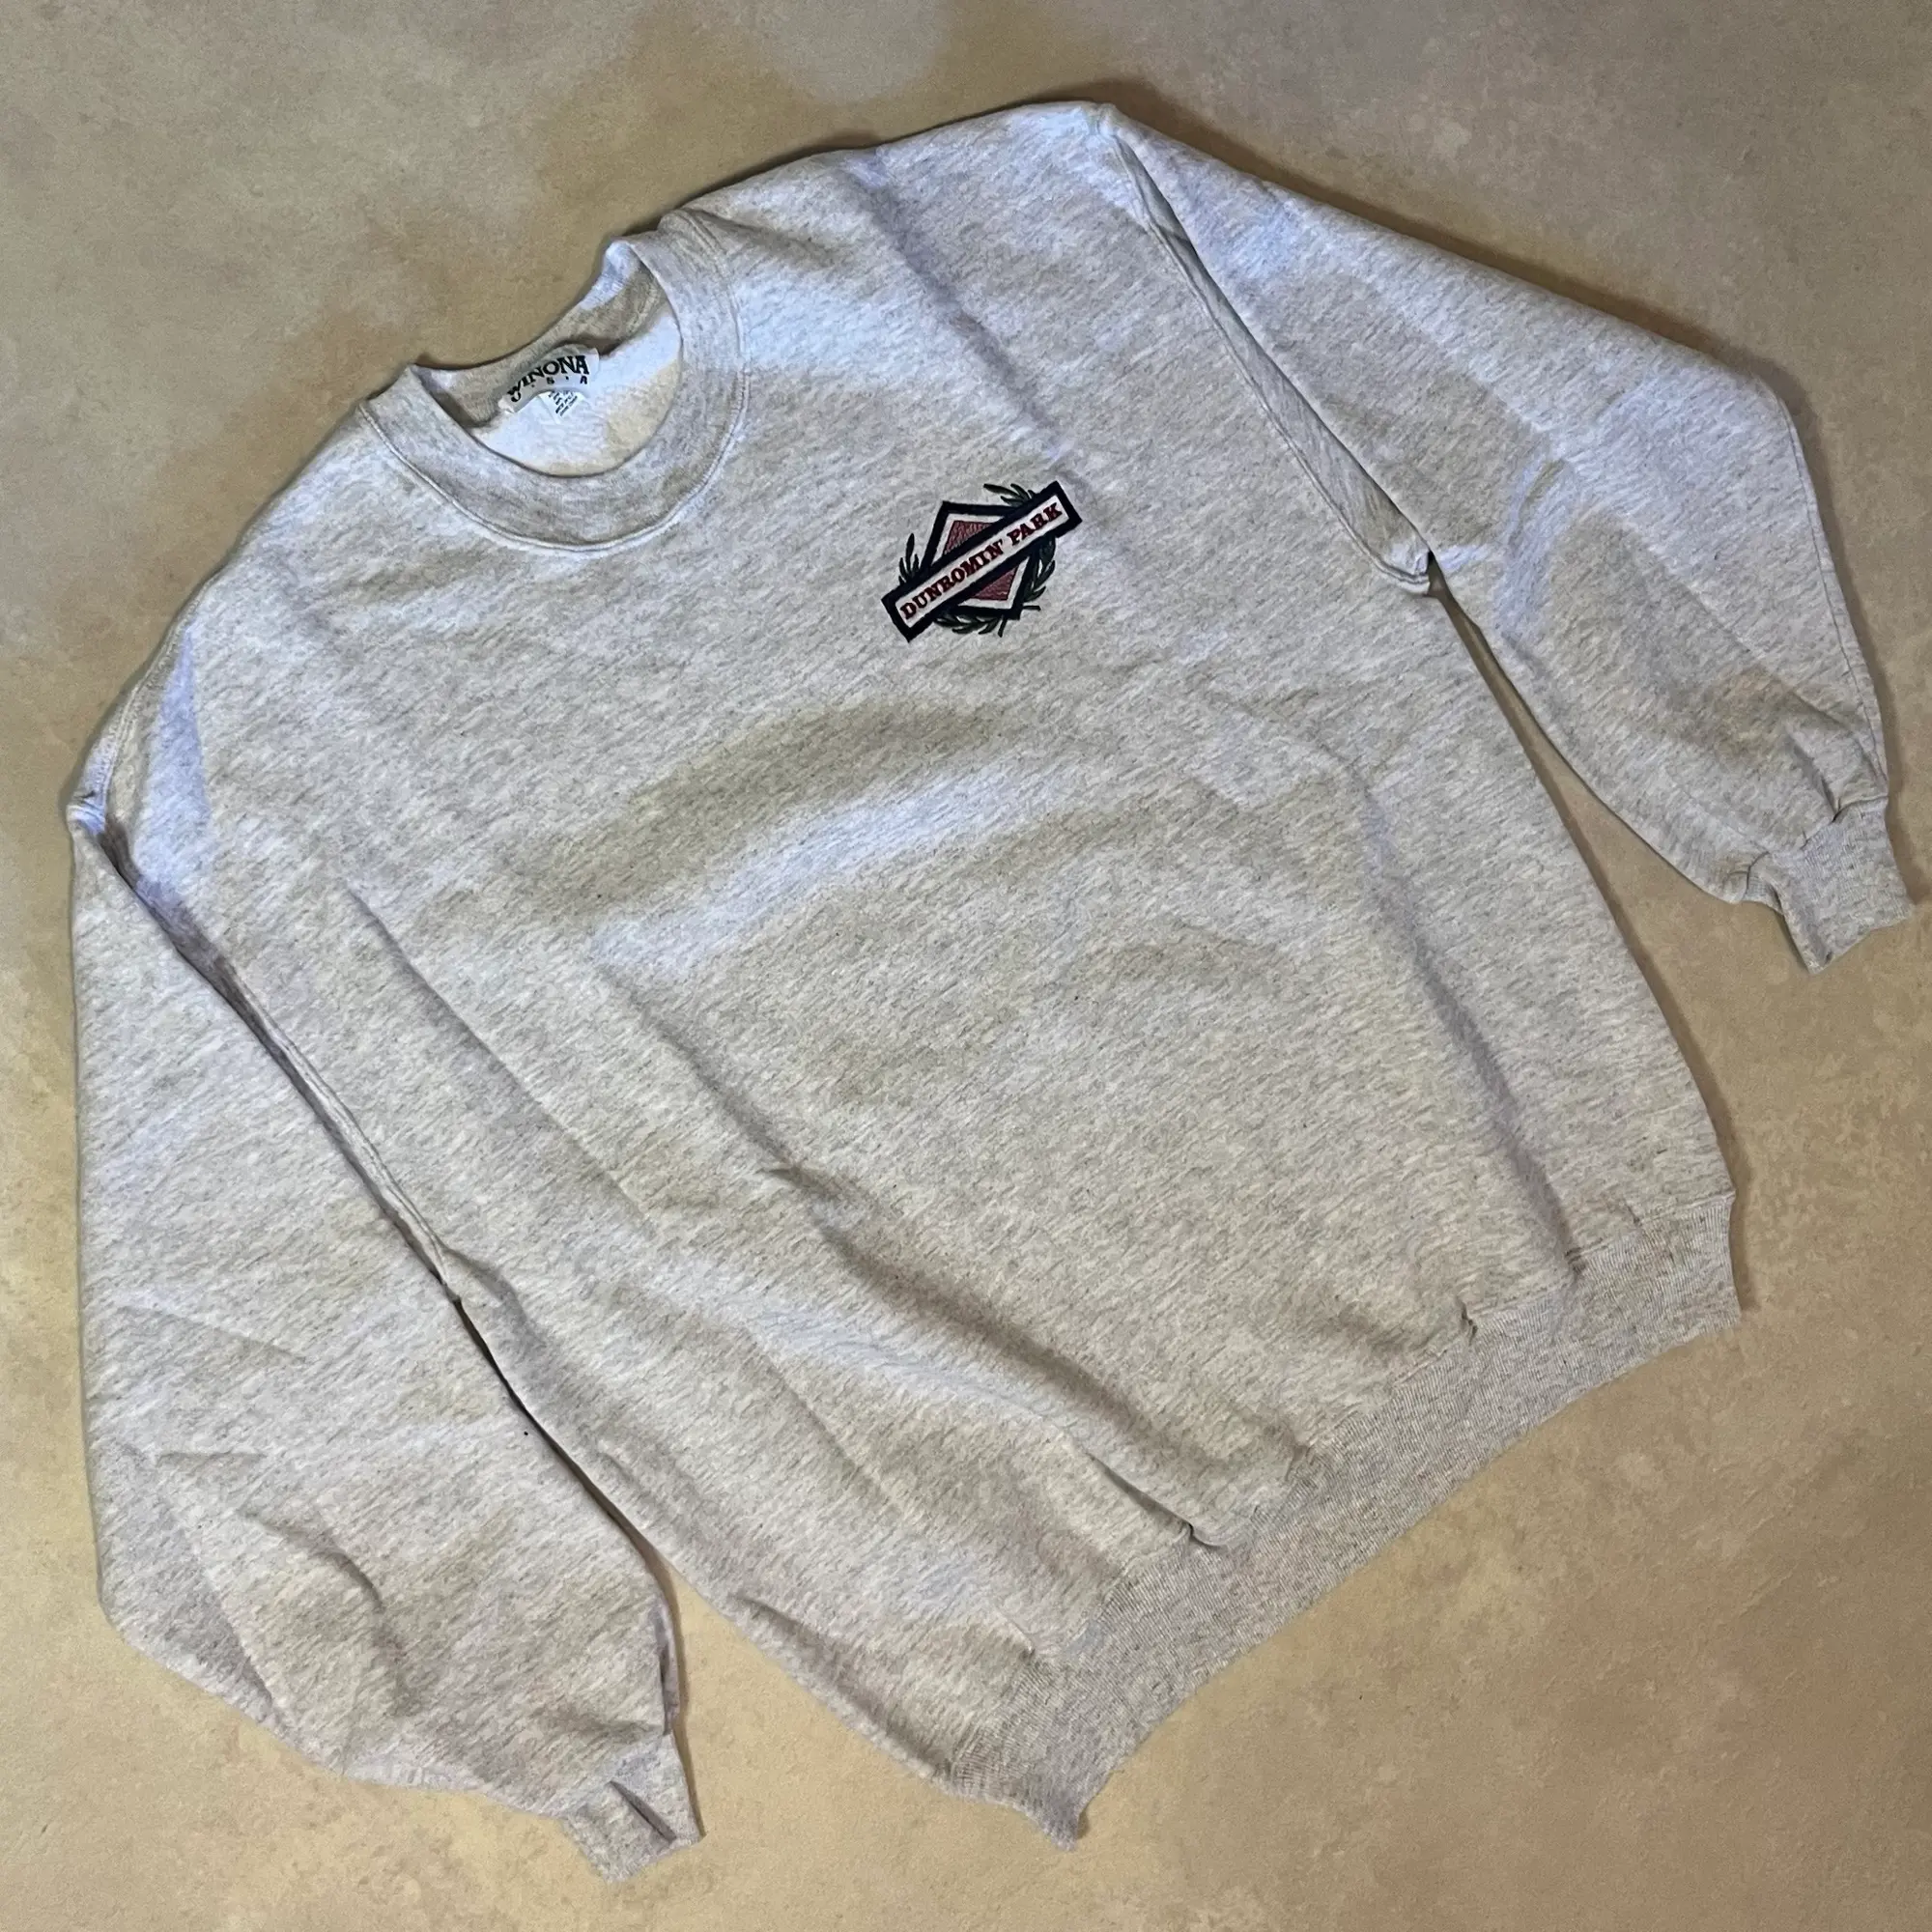 Vintage sweatshirt